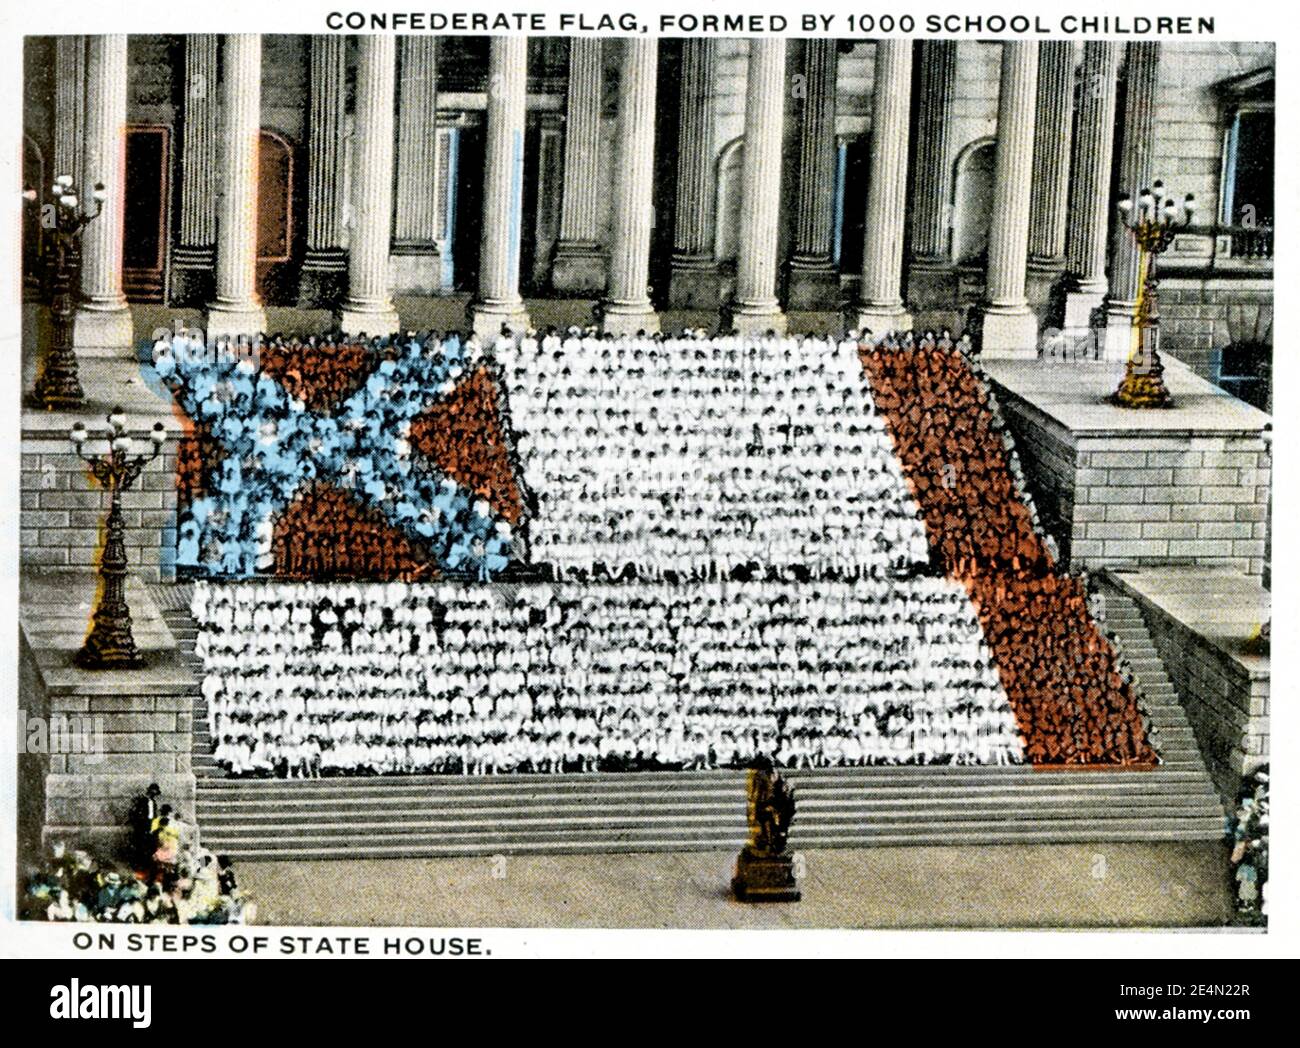 Columbia South Carolina 1918 - bandiera confederata formata da 1000 bambini delle scuole su gradini di una casa di stato. Foto Stock